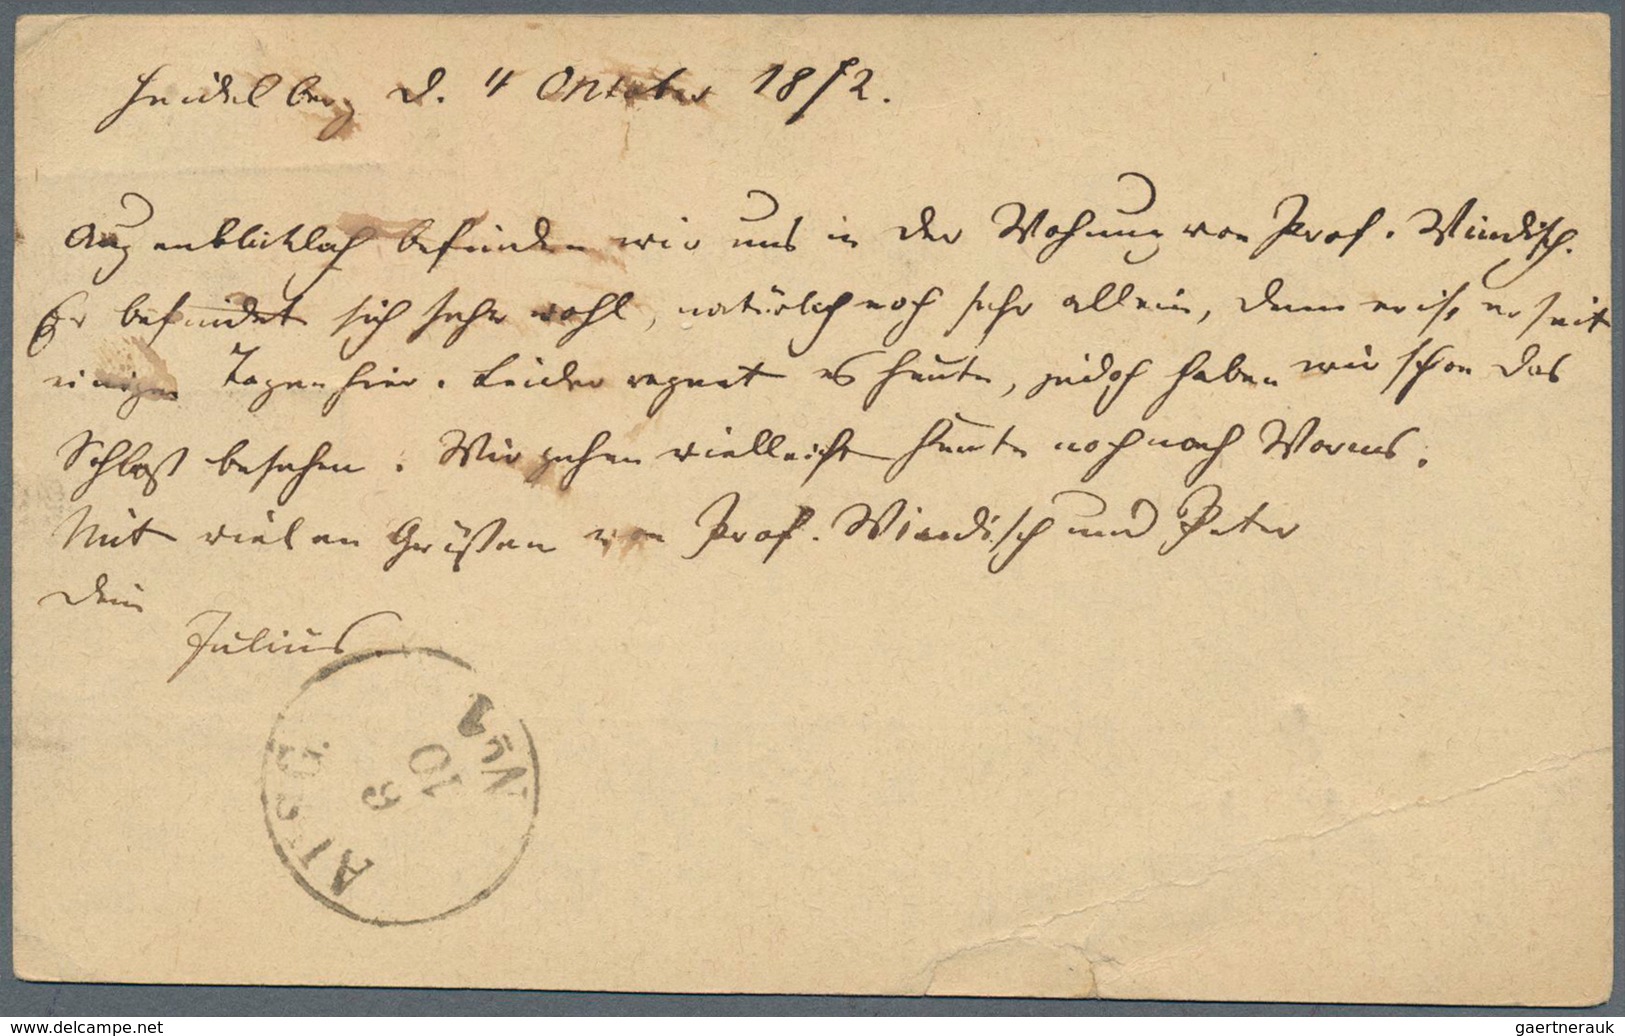 17811 Deutsches Reich - Brustschild: 1872, Zweimal Kleines Schild 1 Kr. Grün Auf Amtlichen Postkartenformu - Unused Stamps